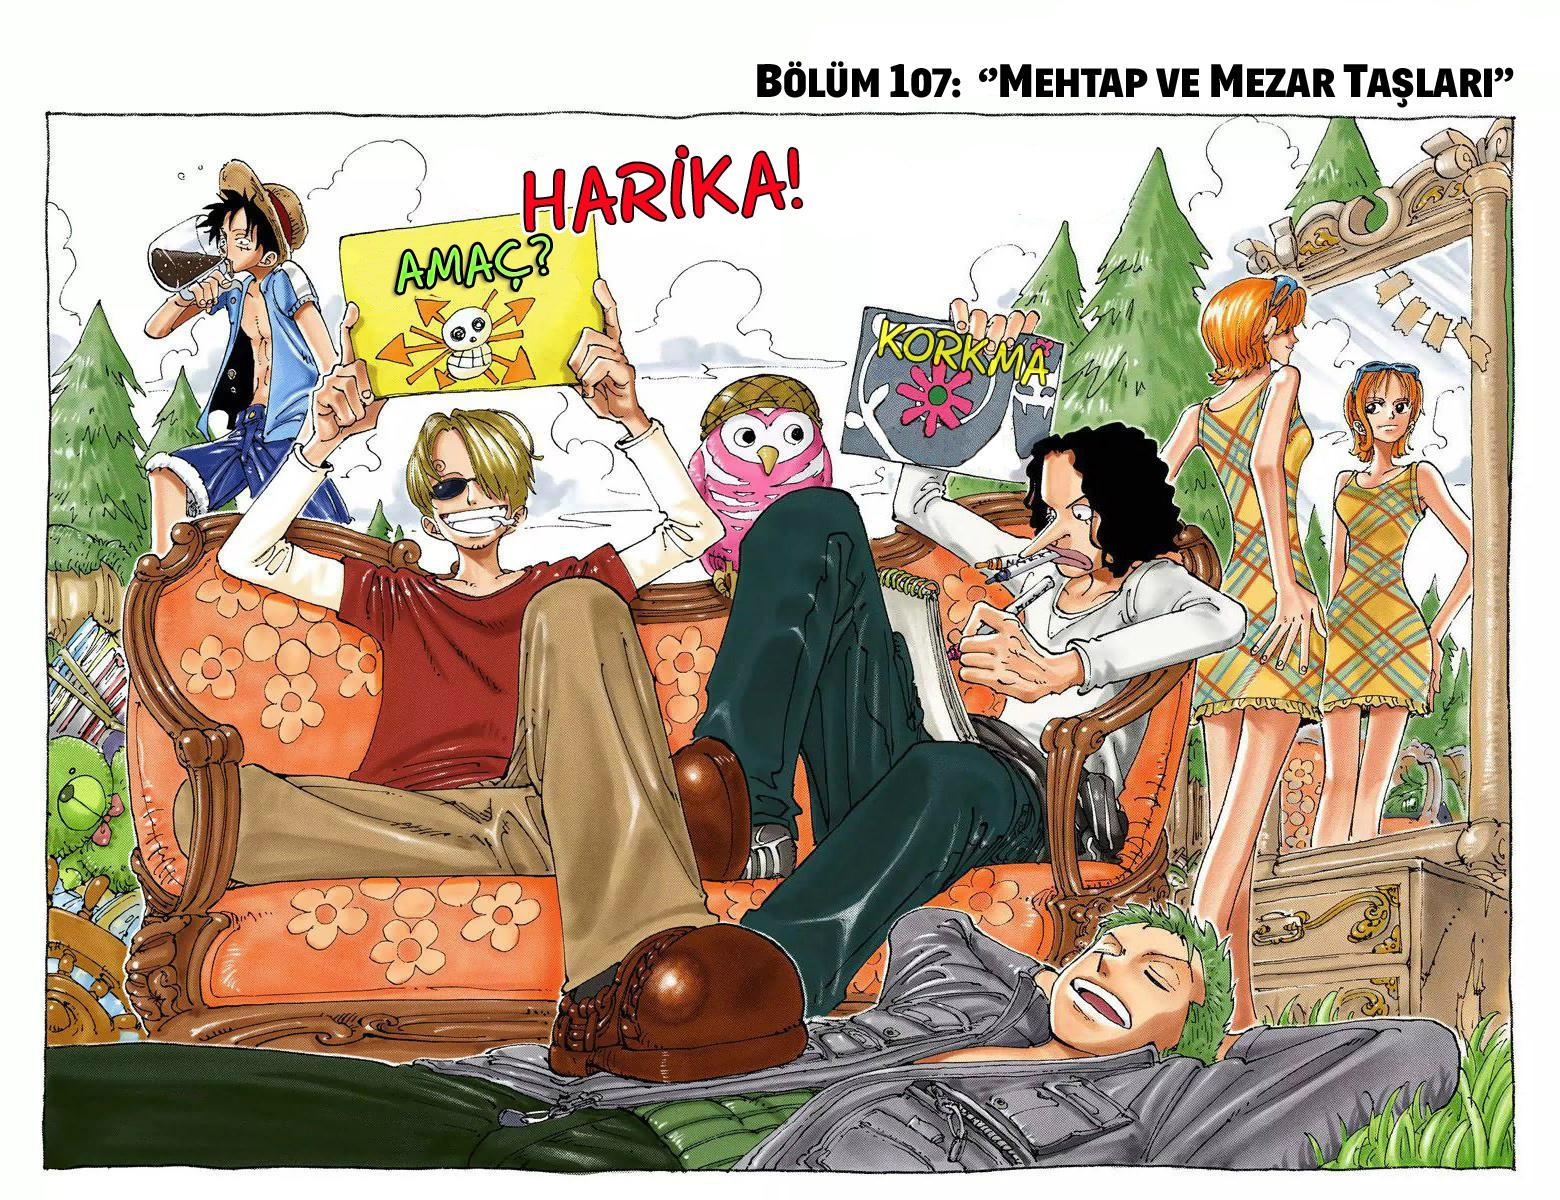 One Piece [Renkli] mangasının 0107 bölümünün 2. sayfasını okuyorsunuz.